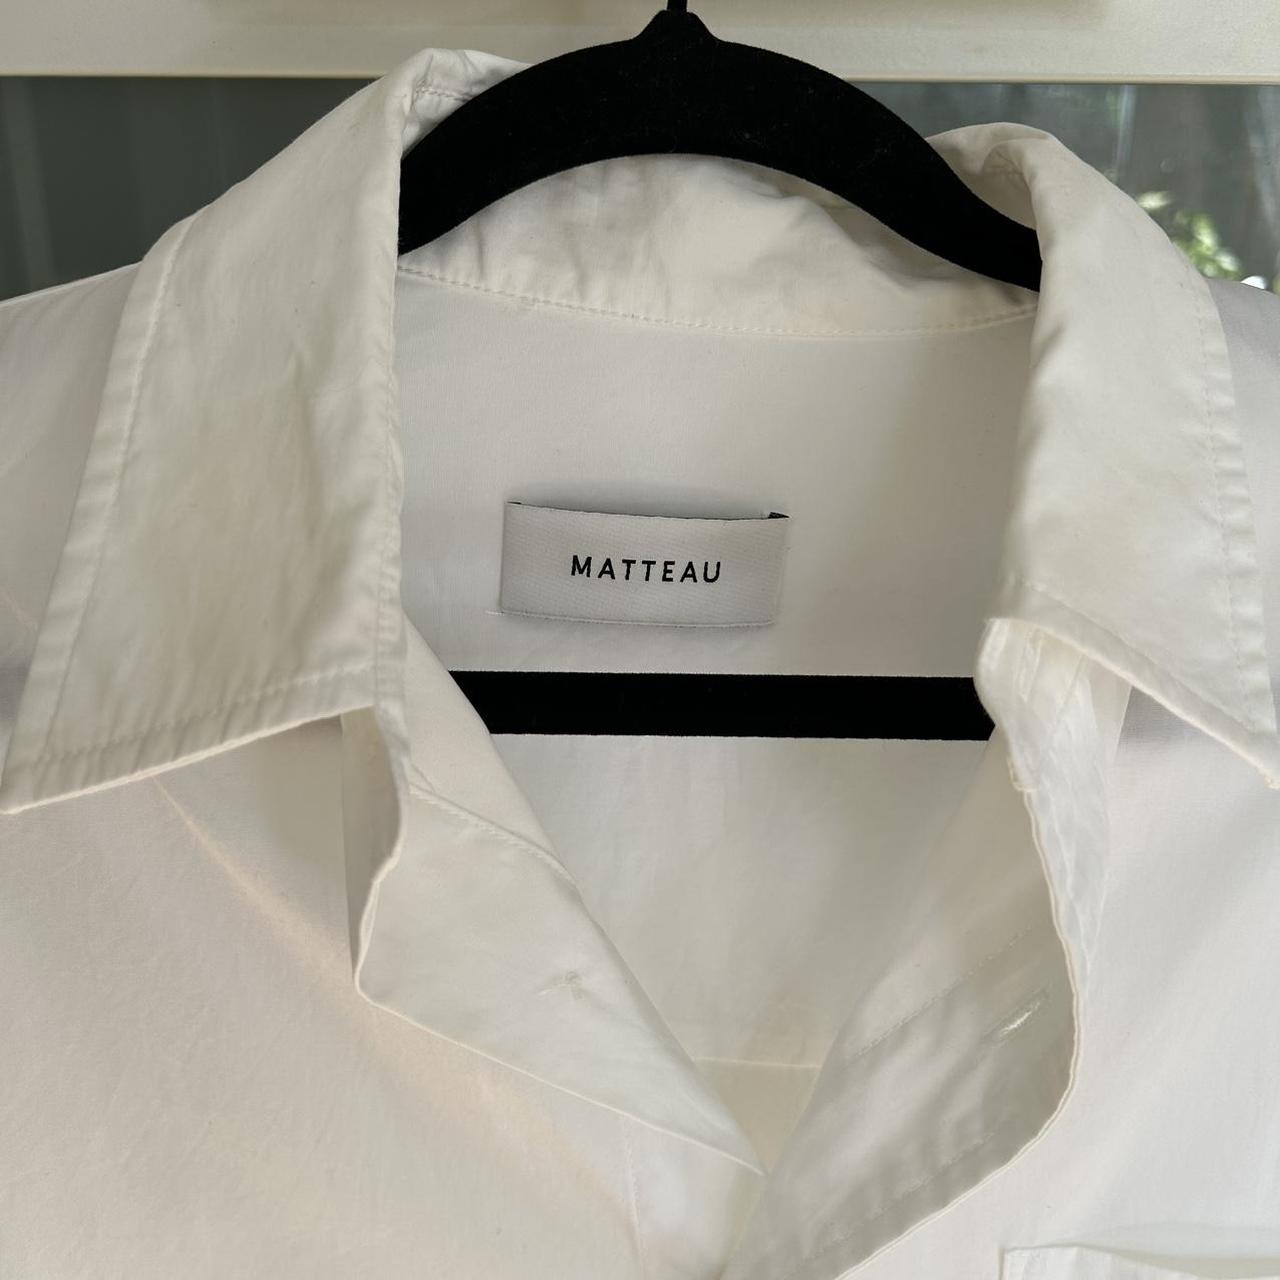 Matteau Classic White Shirt Size 3 (women’s... - Depop